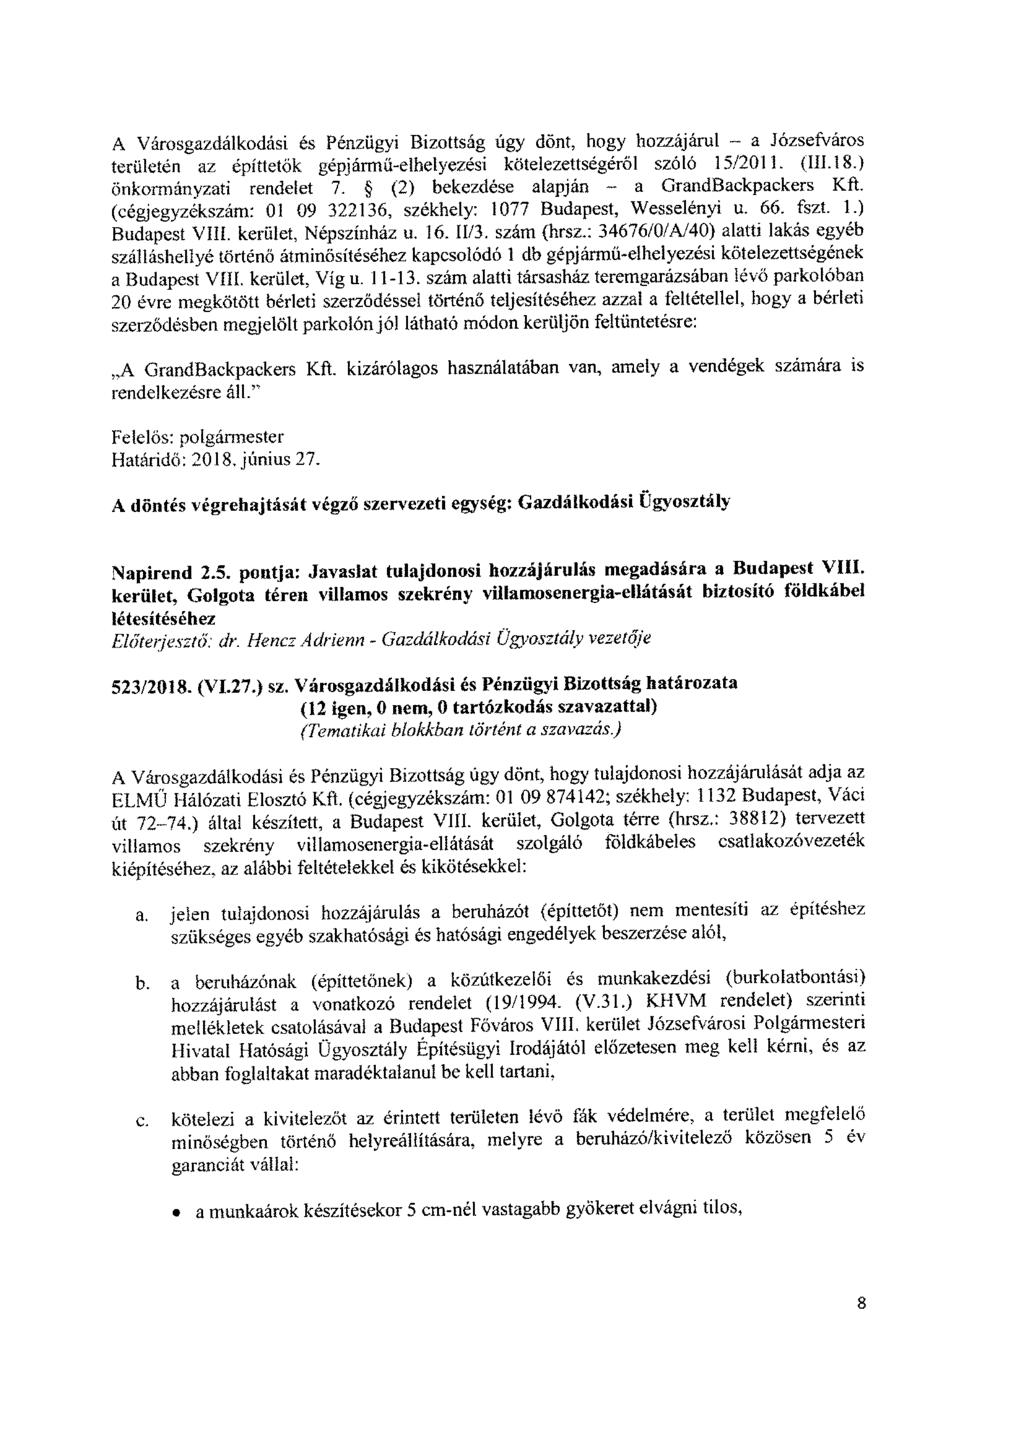 A Városgazdálkodási és Pénzügyi Bizottság úgy dönt, hogy hozzájárul - a Józsefváros területén az építtetők gépjármű-elhelyezési kötelezettségéről szóló 15/2011. (III. 18.) Önkormányzati rendelet 7.